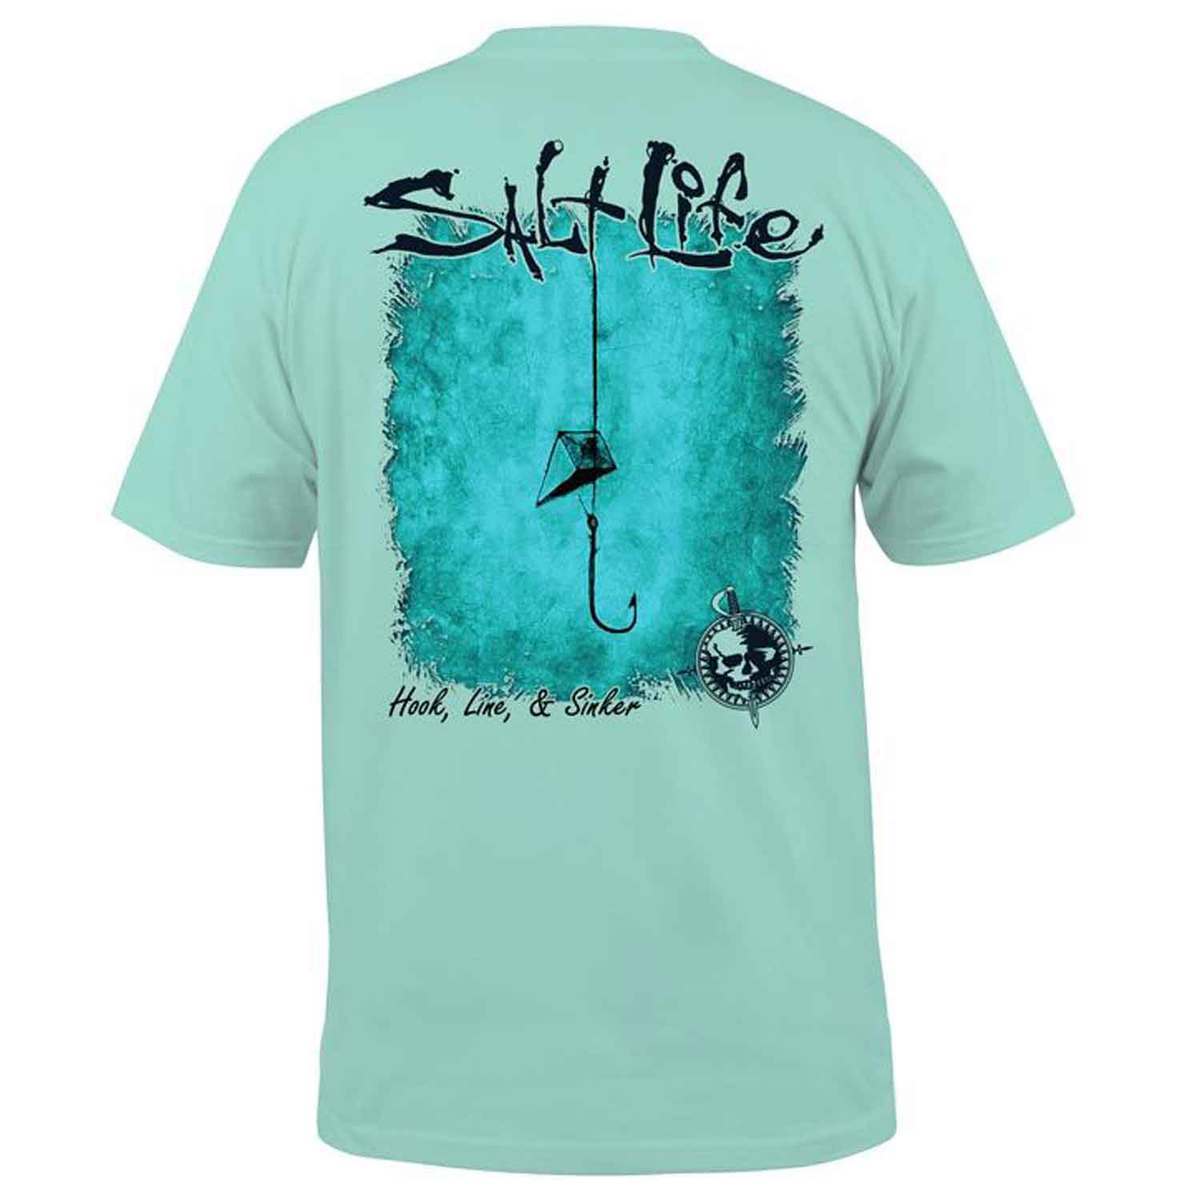 Salt Life Men's Hook Line And Sinker Graphic Short Sleeve Shirt - Aruba ...